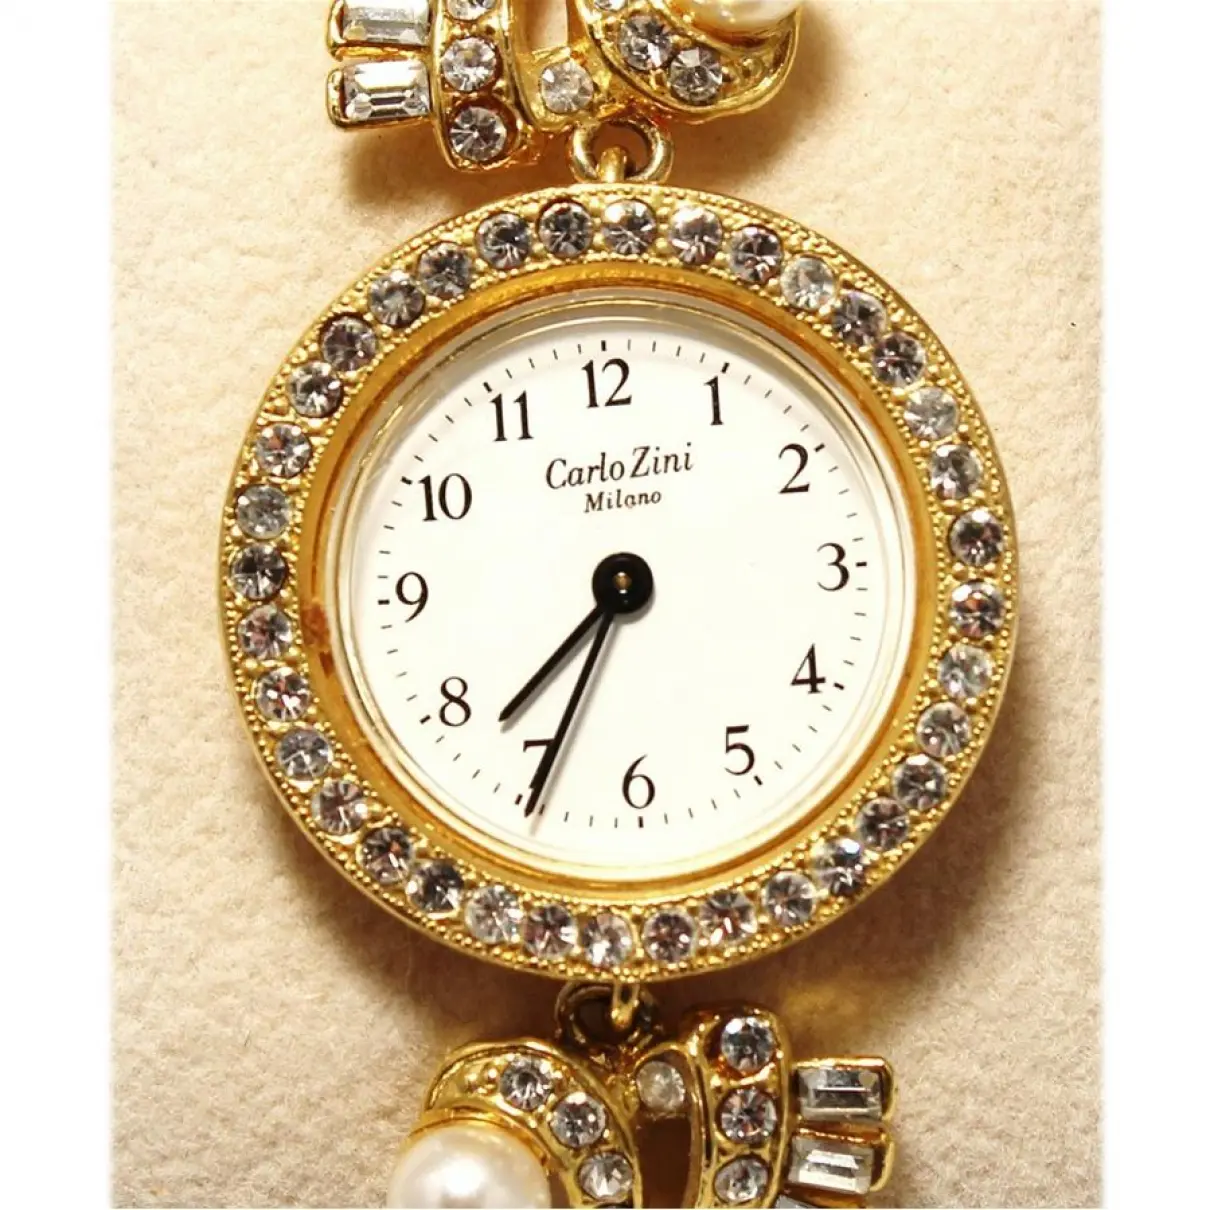 Buy Carlo Zini Yellow gold watch online